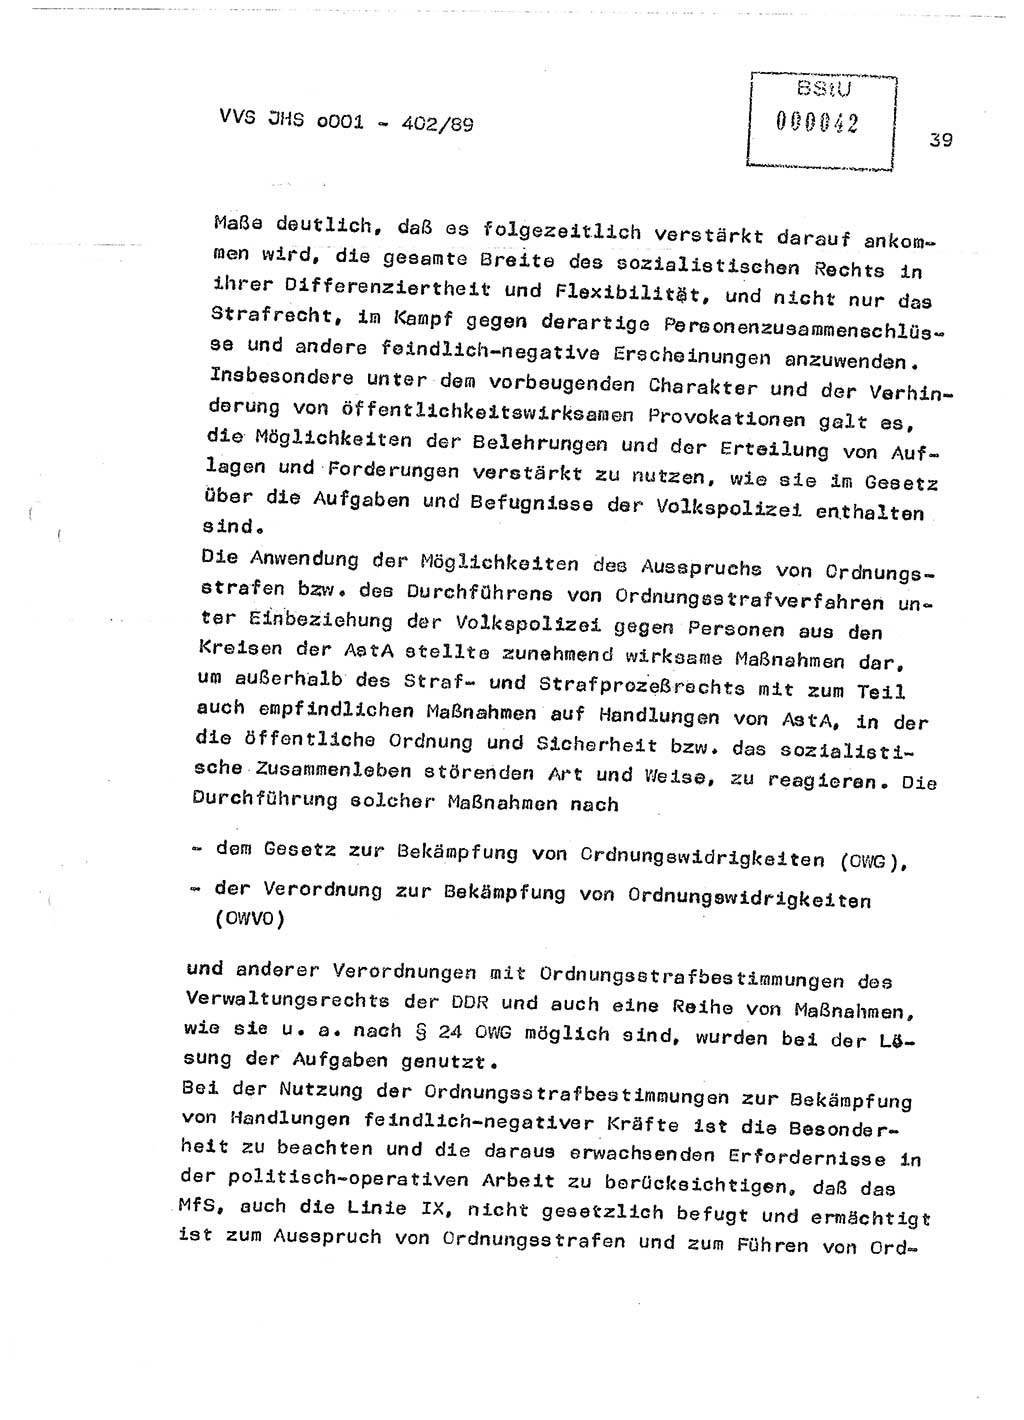 Diplomarbeit Major Günter Müller (HA Ⅸ/9), Ministerium für Staatssicherheit (MfS) [Deutsche Demokratische Republik (DDR)], Juristische Hochschule (JHS), Vertrauliche Verschlußsache (VVS) o001-402/89, Potsdam 1989, Seite 39 (Dipl.-Arb. MfS DDR JHS VVS o001-402/89 1989, S. 39)